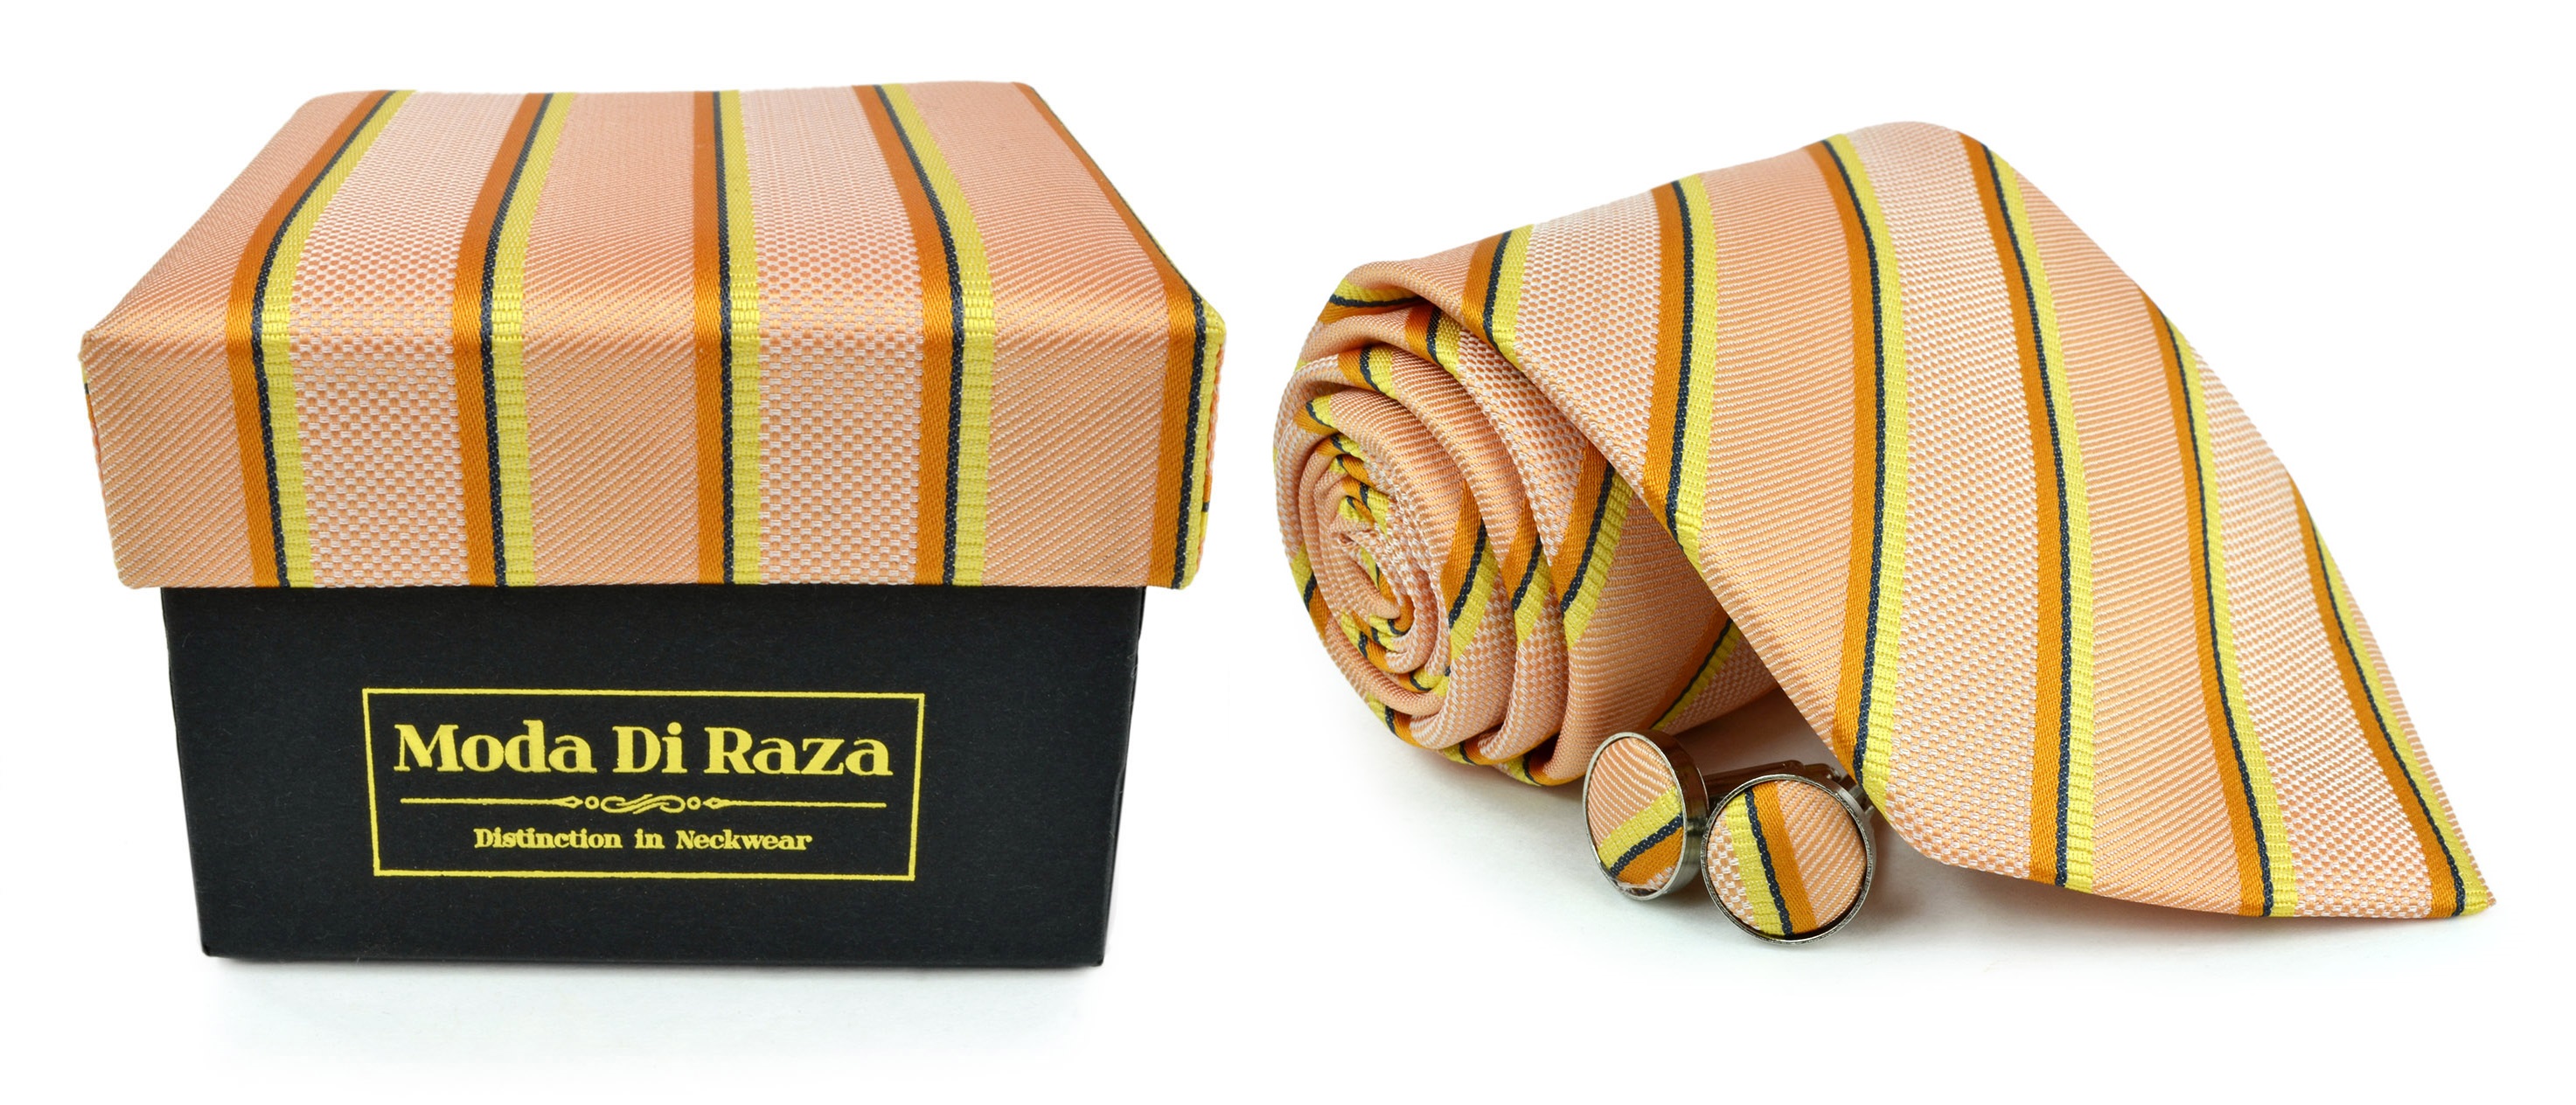 Moda Di Raza Men's NeckTie 3.0 With Cufflink n Gift Box Wedding Formal Events - Orange